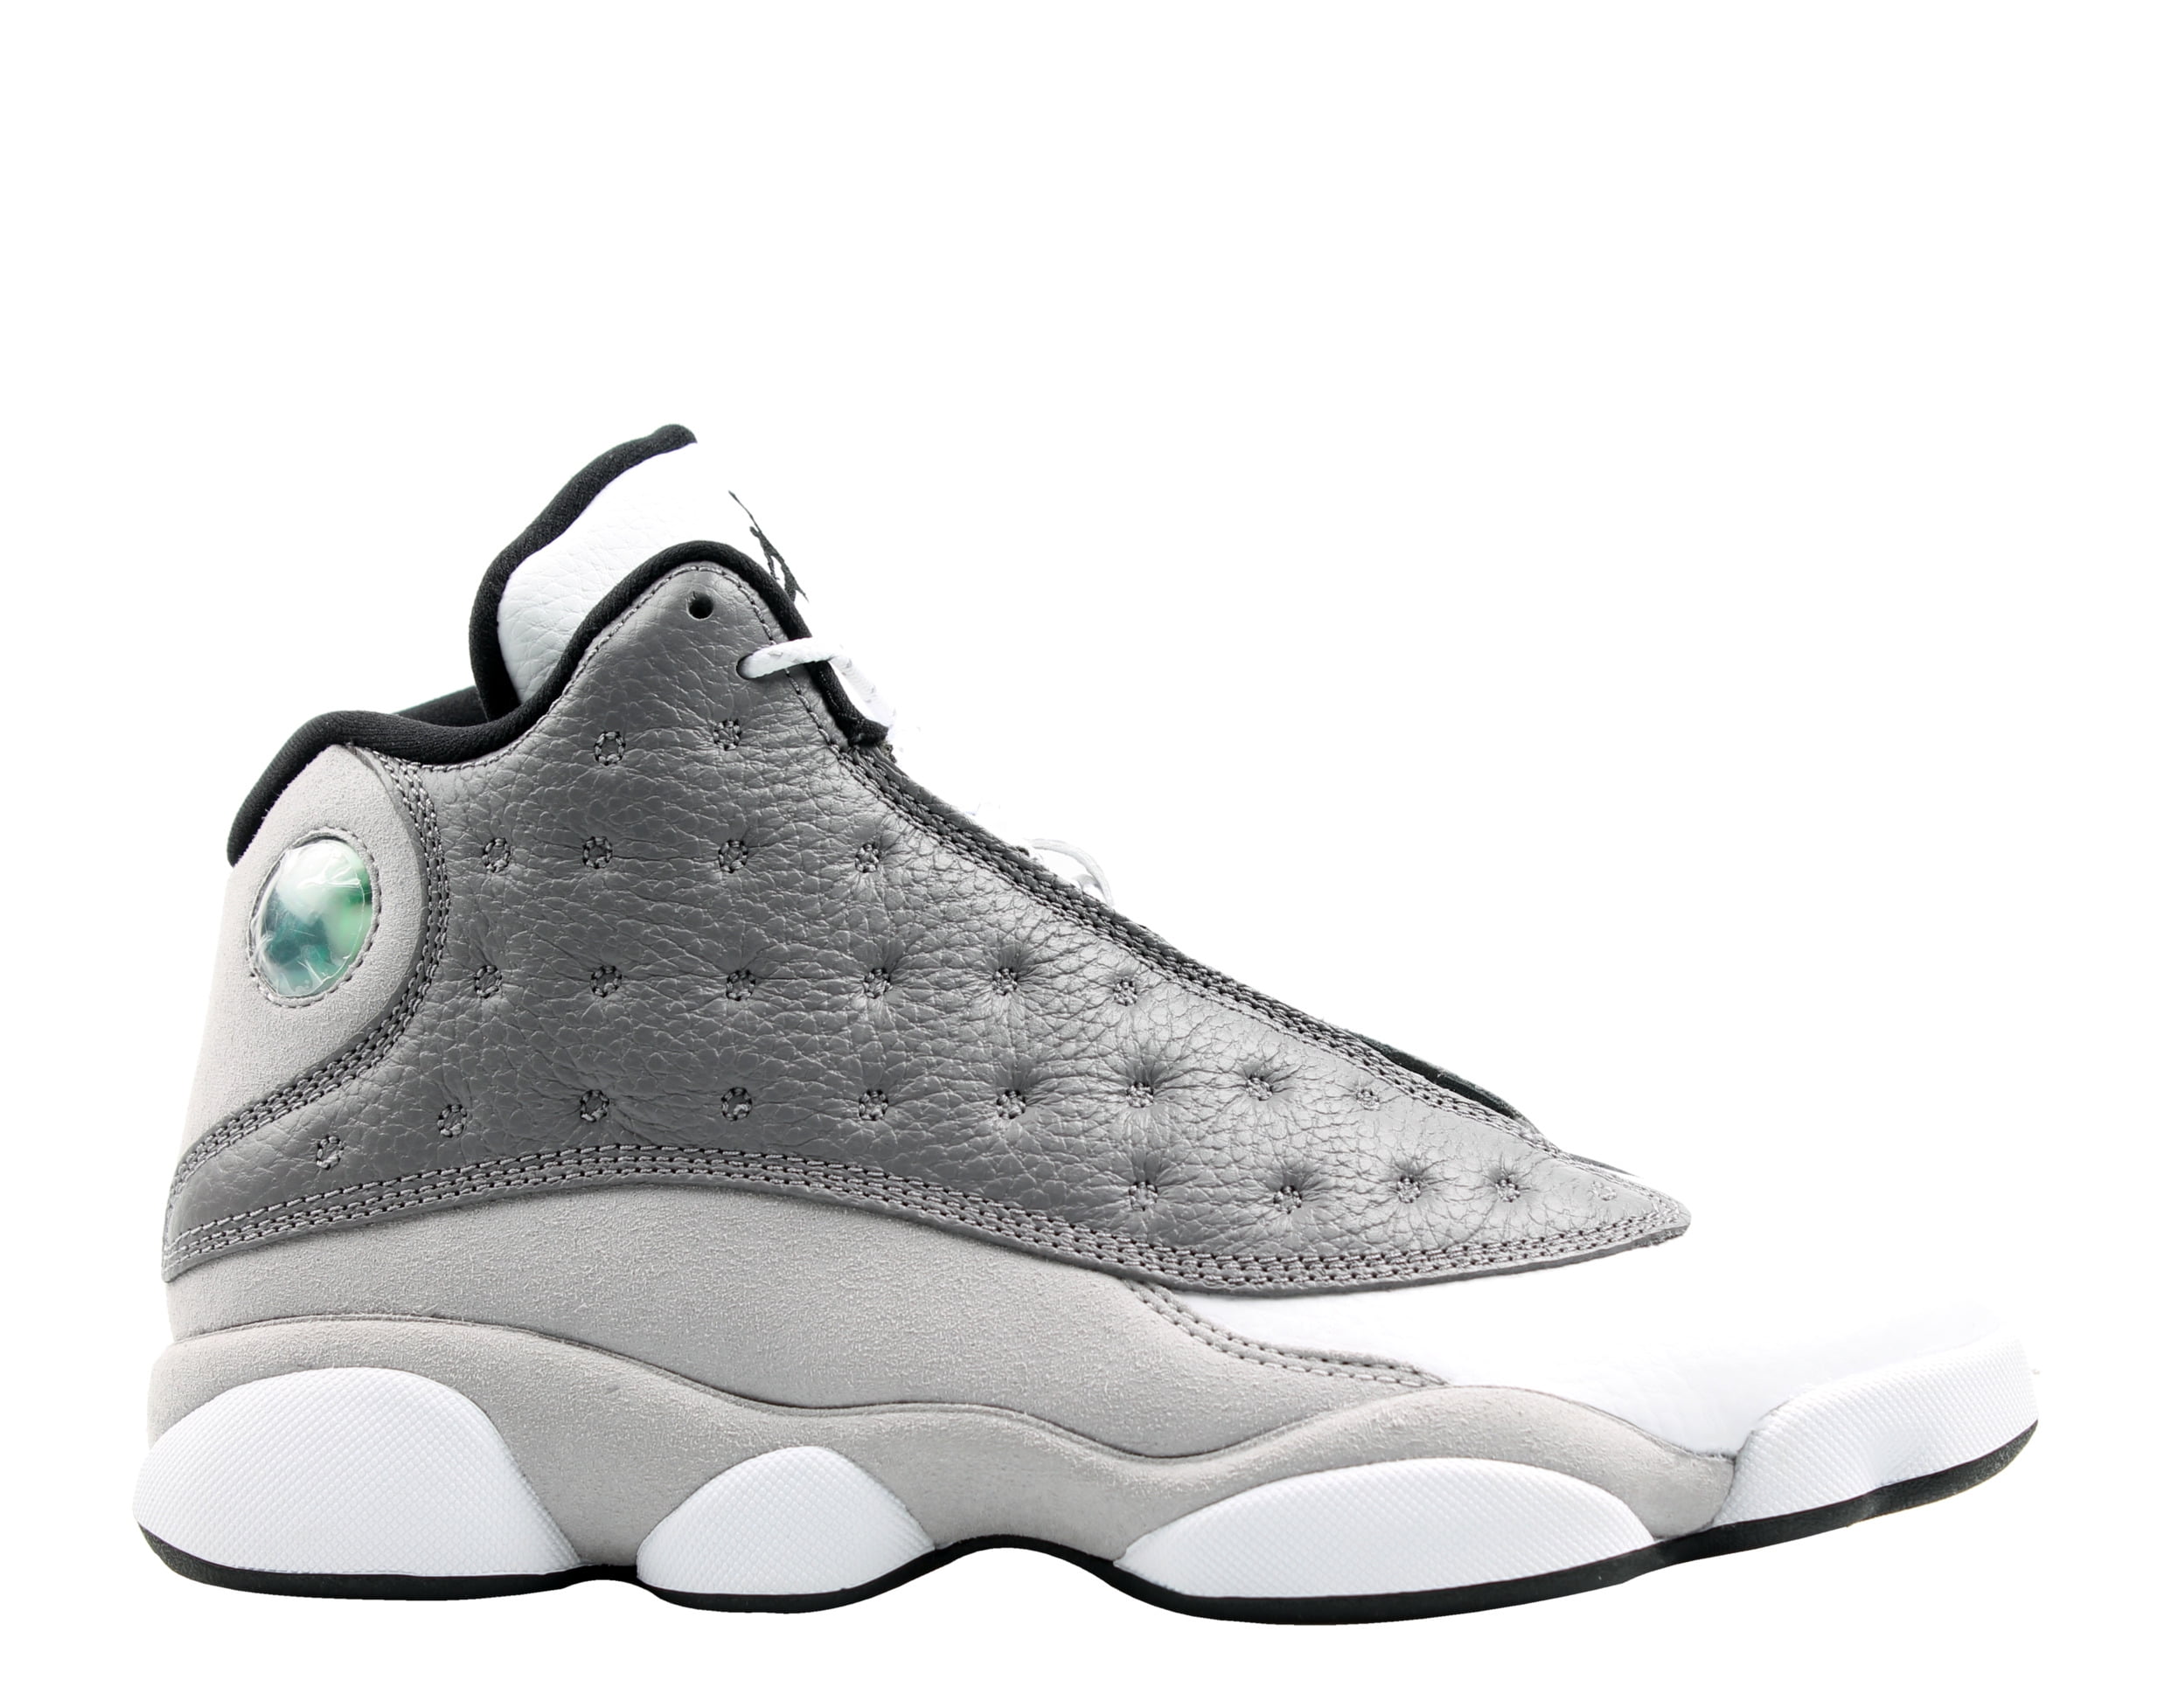 Nike Air Jordan 13 Retro Atmosphere Grey Men's Basketball Shoes 